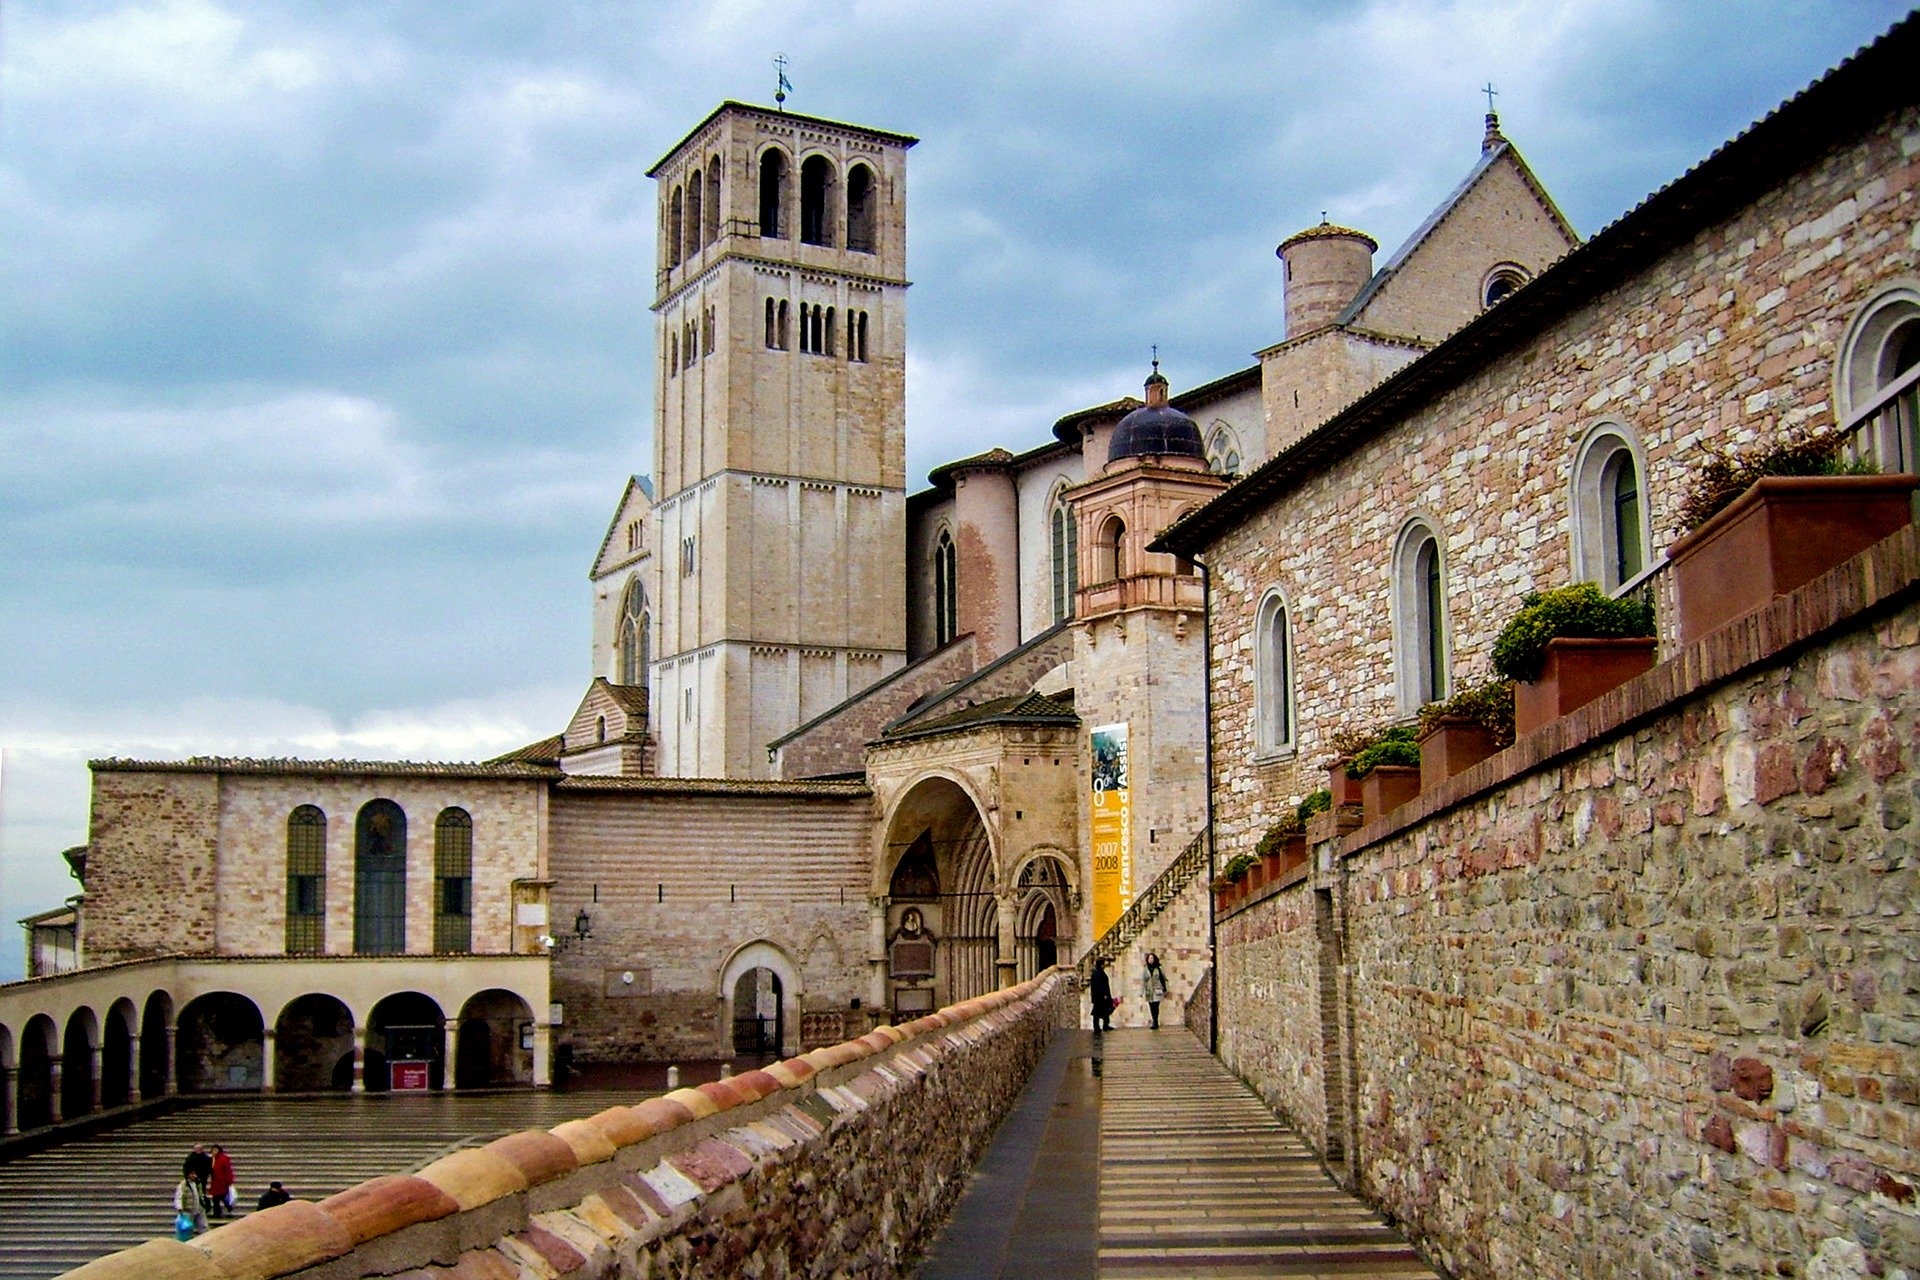 Notaio - Assisi